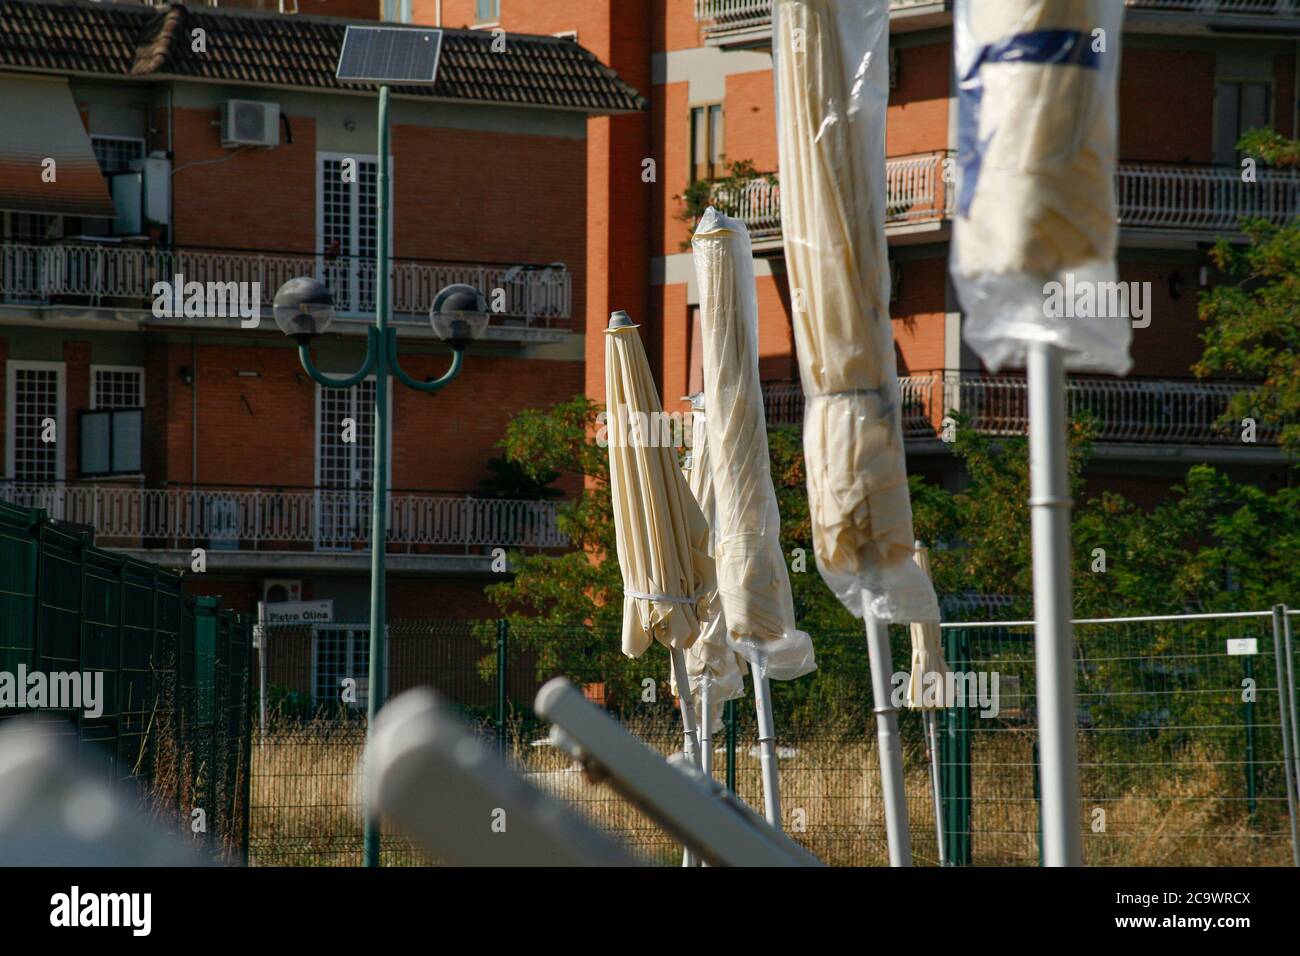 Una delle spiagge urbane ( Torre Maura)organizzate ed allestite dal comune di Roma. Foto de stock